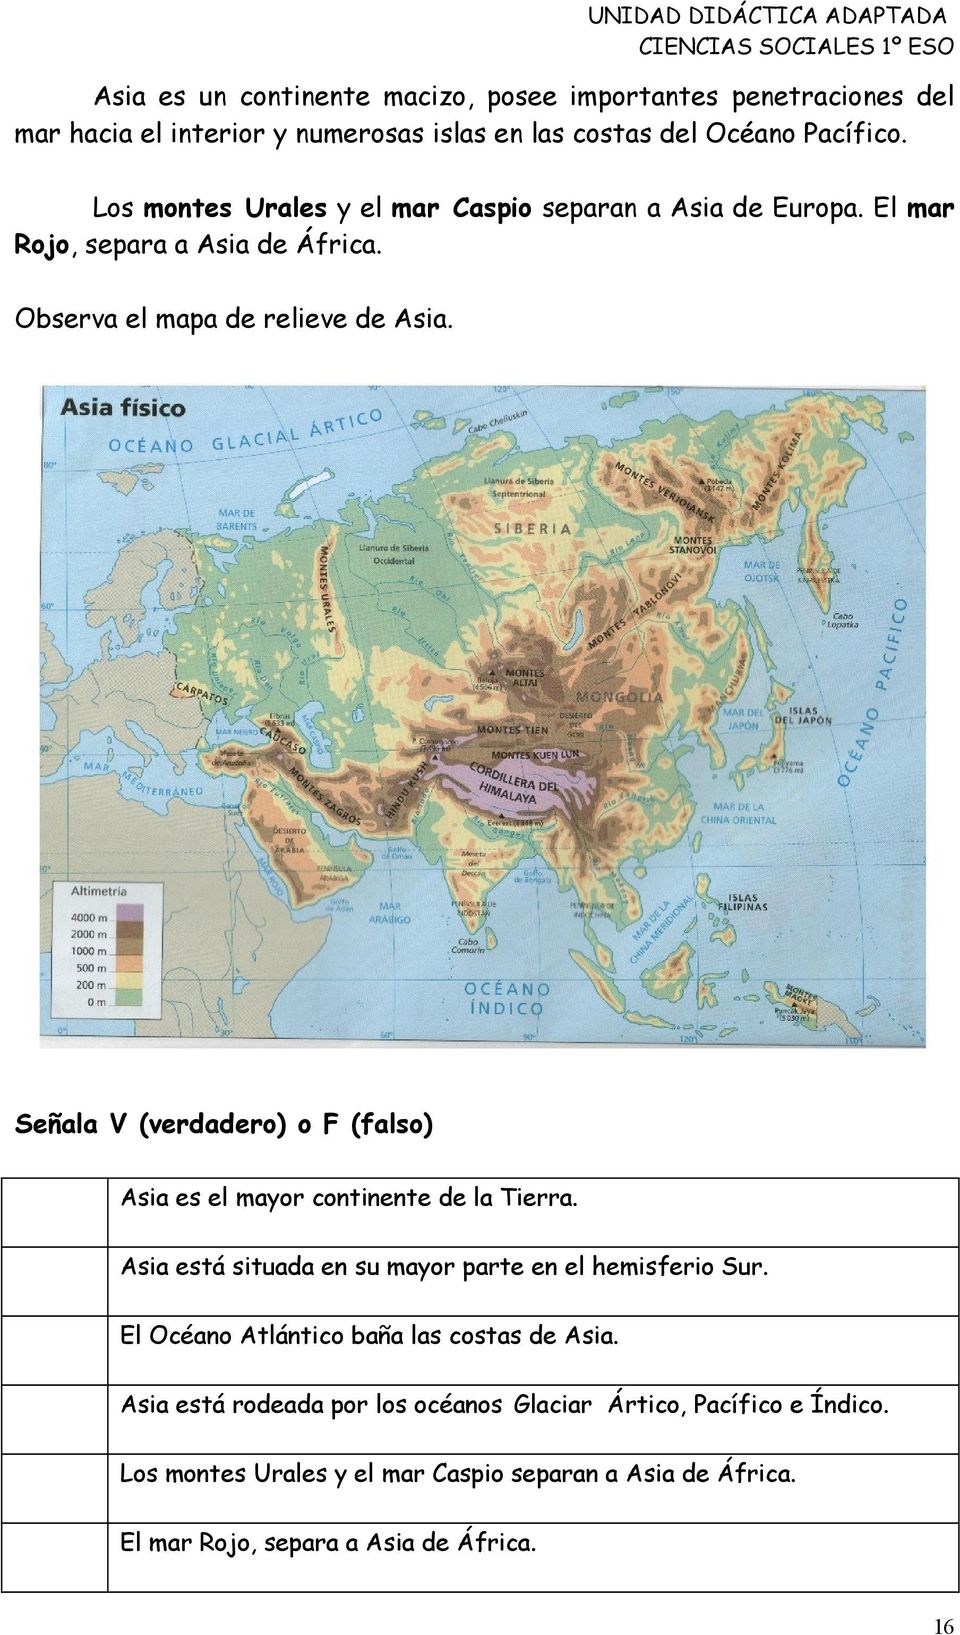 Señala V (verdadero) o F (falso) Asia es el mayor continente de la Tierra. Asia está situada en su mayor parte en el hemisferio Sur.